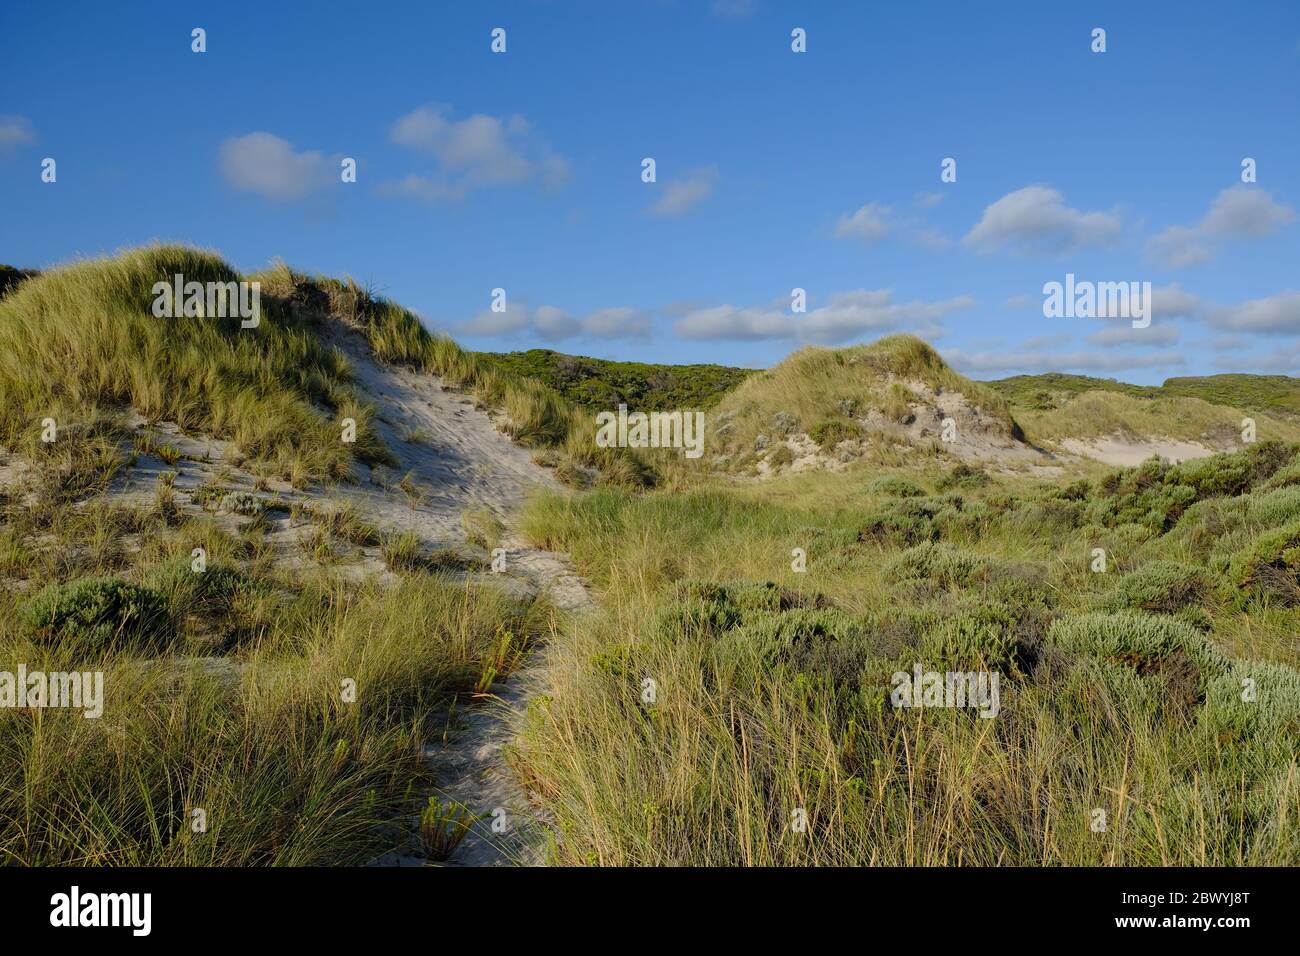 Australie occidentale : brisa - paysage de dunes côtières Banque D'Images